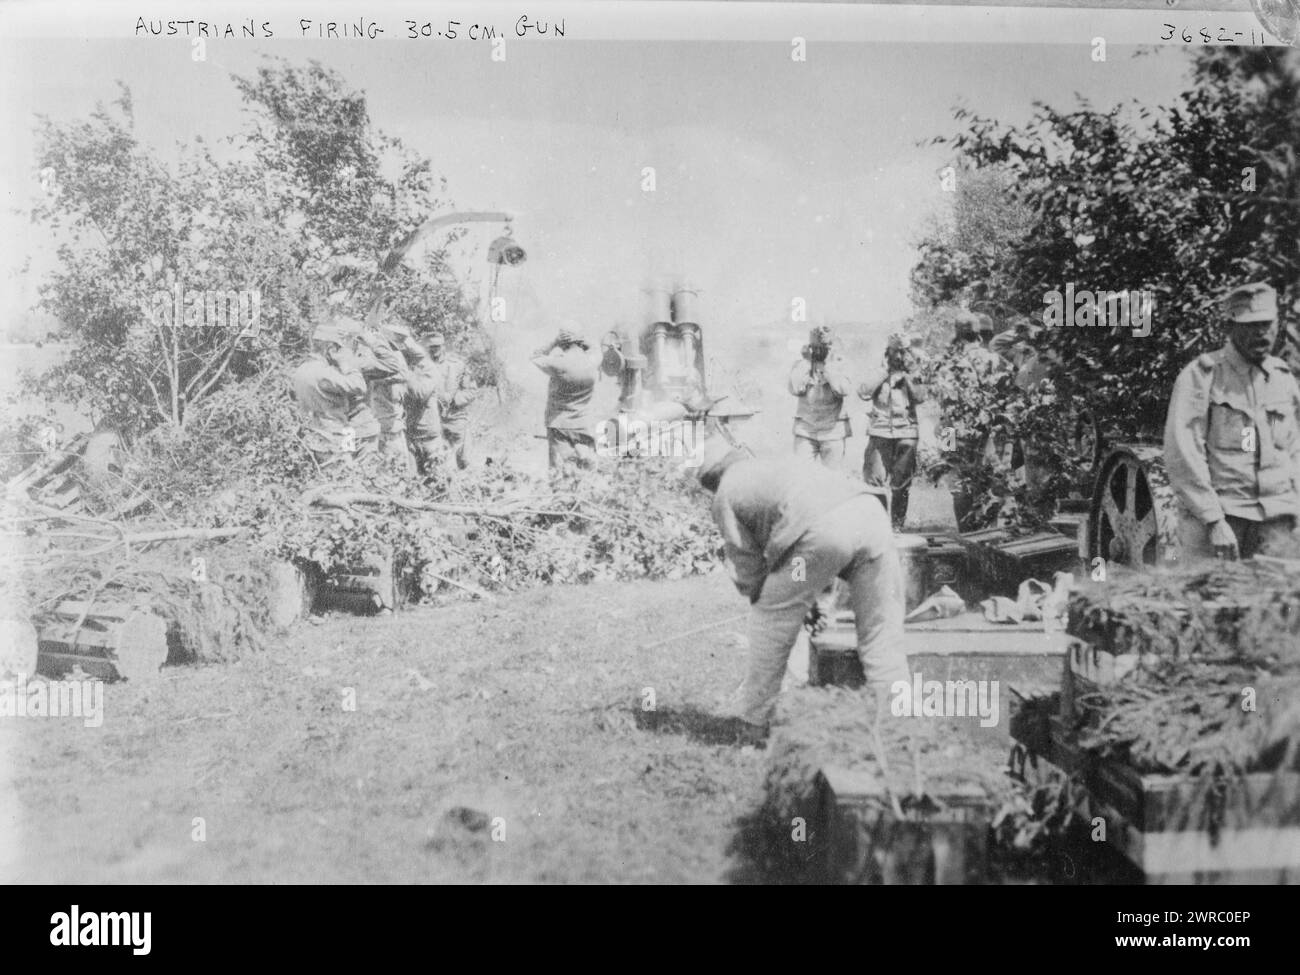 Austrians firing 30.5 cm. gun, between ca. 1910 and ca. 1915, Glass negatives, 1 negative: glass Stock Photo